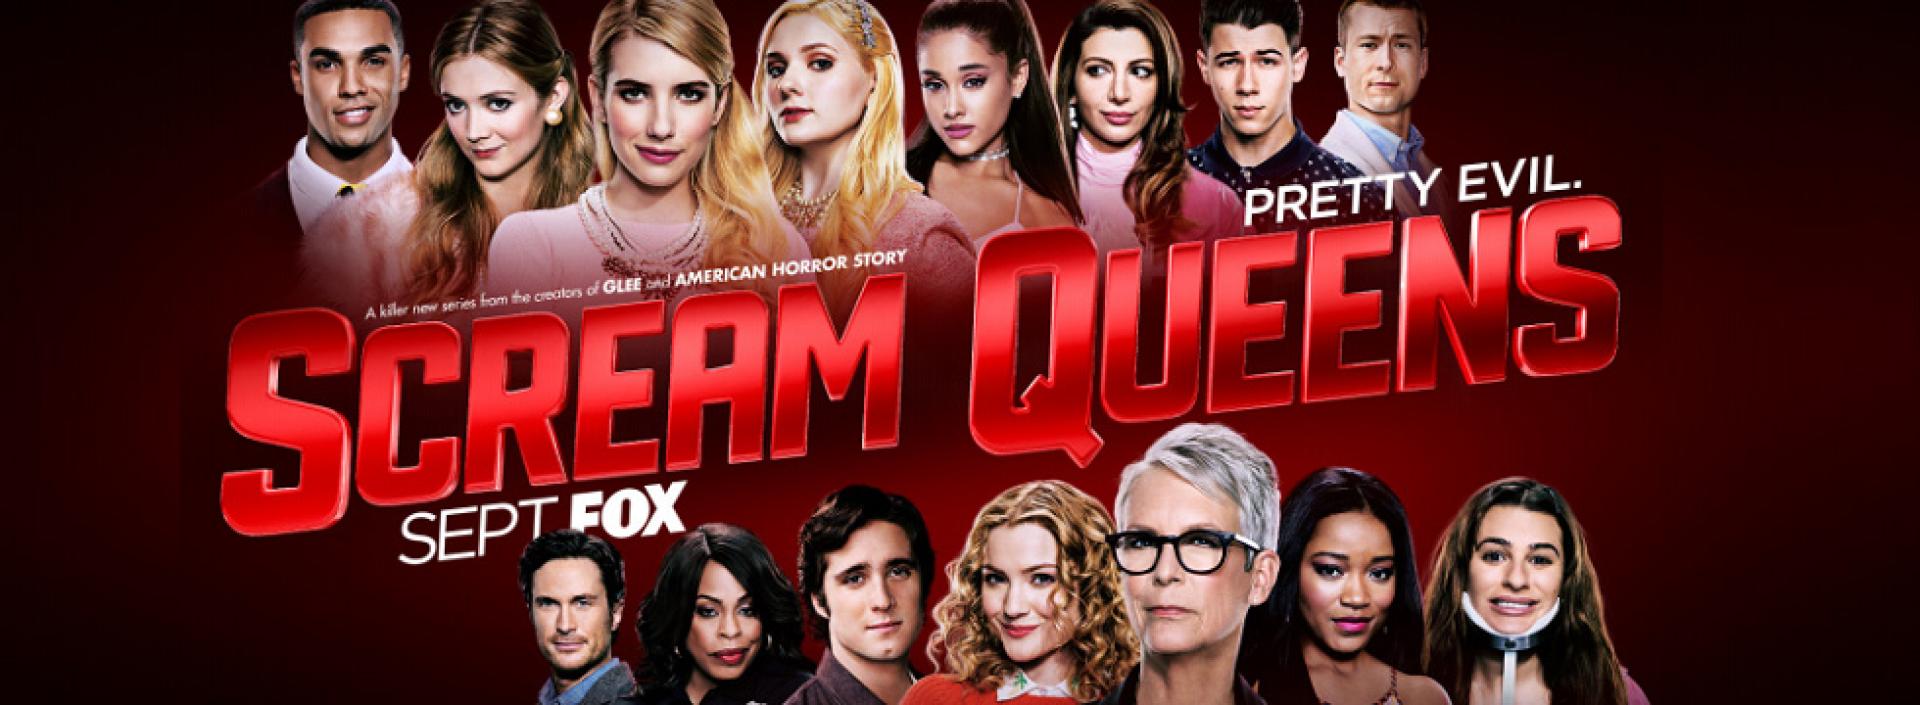 Scream Queens 1x07